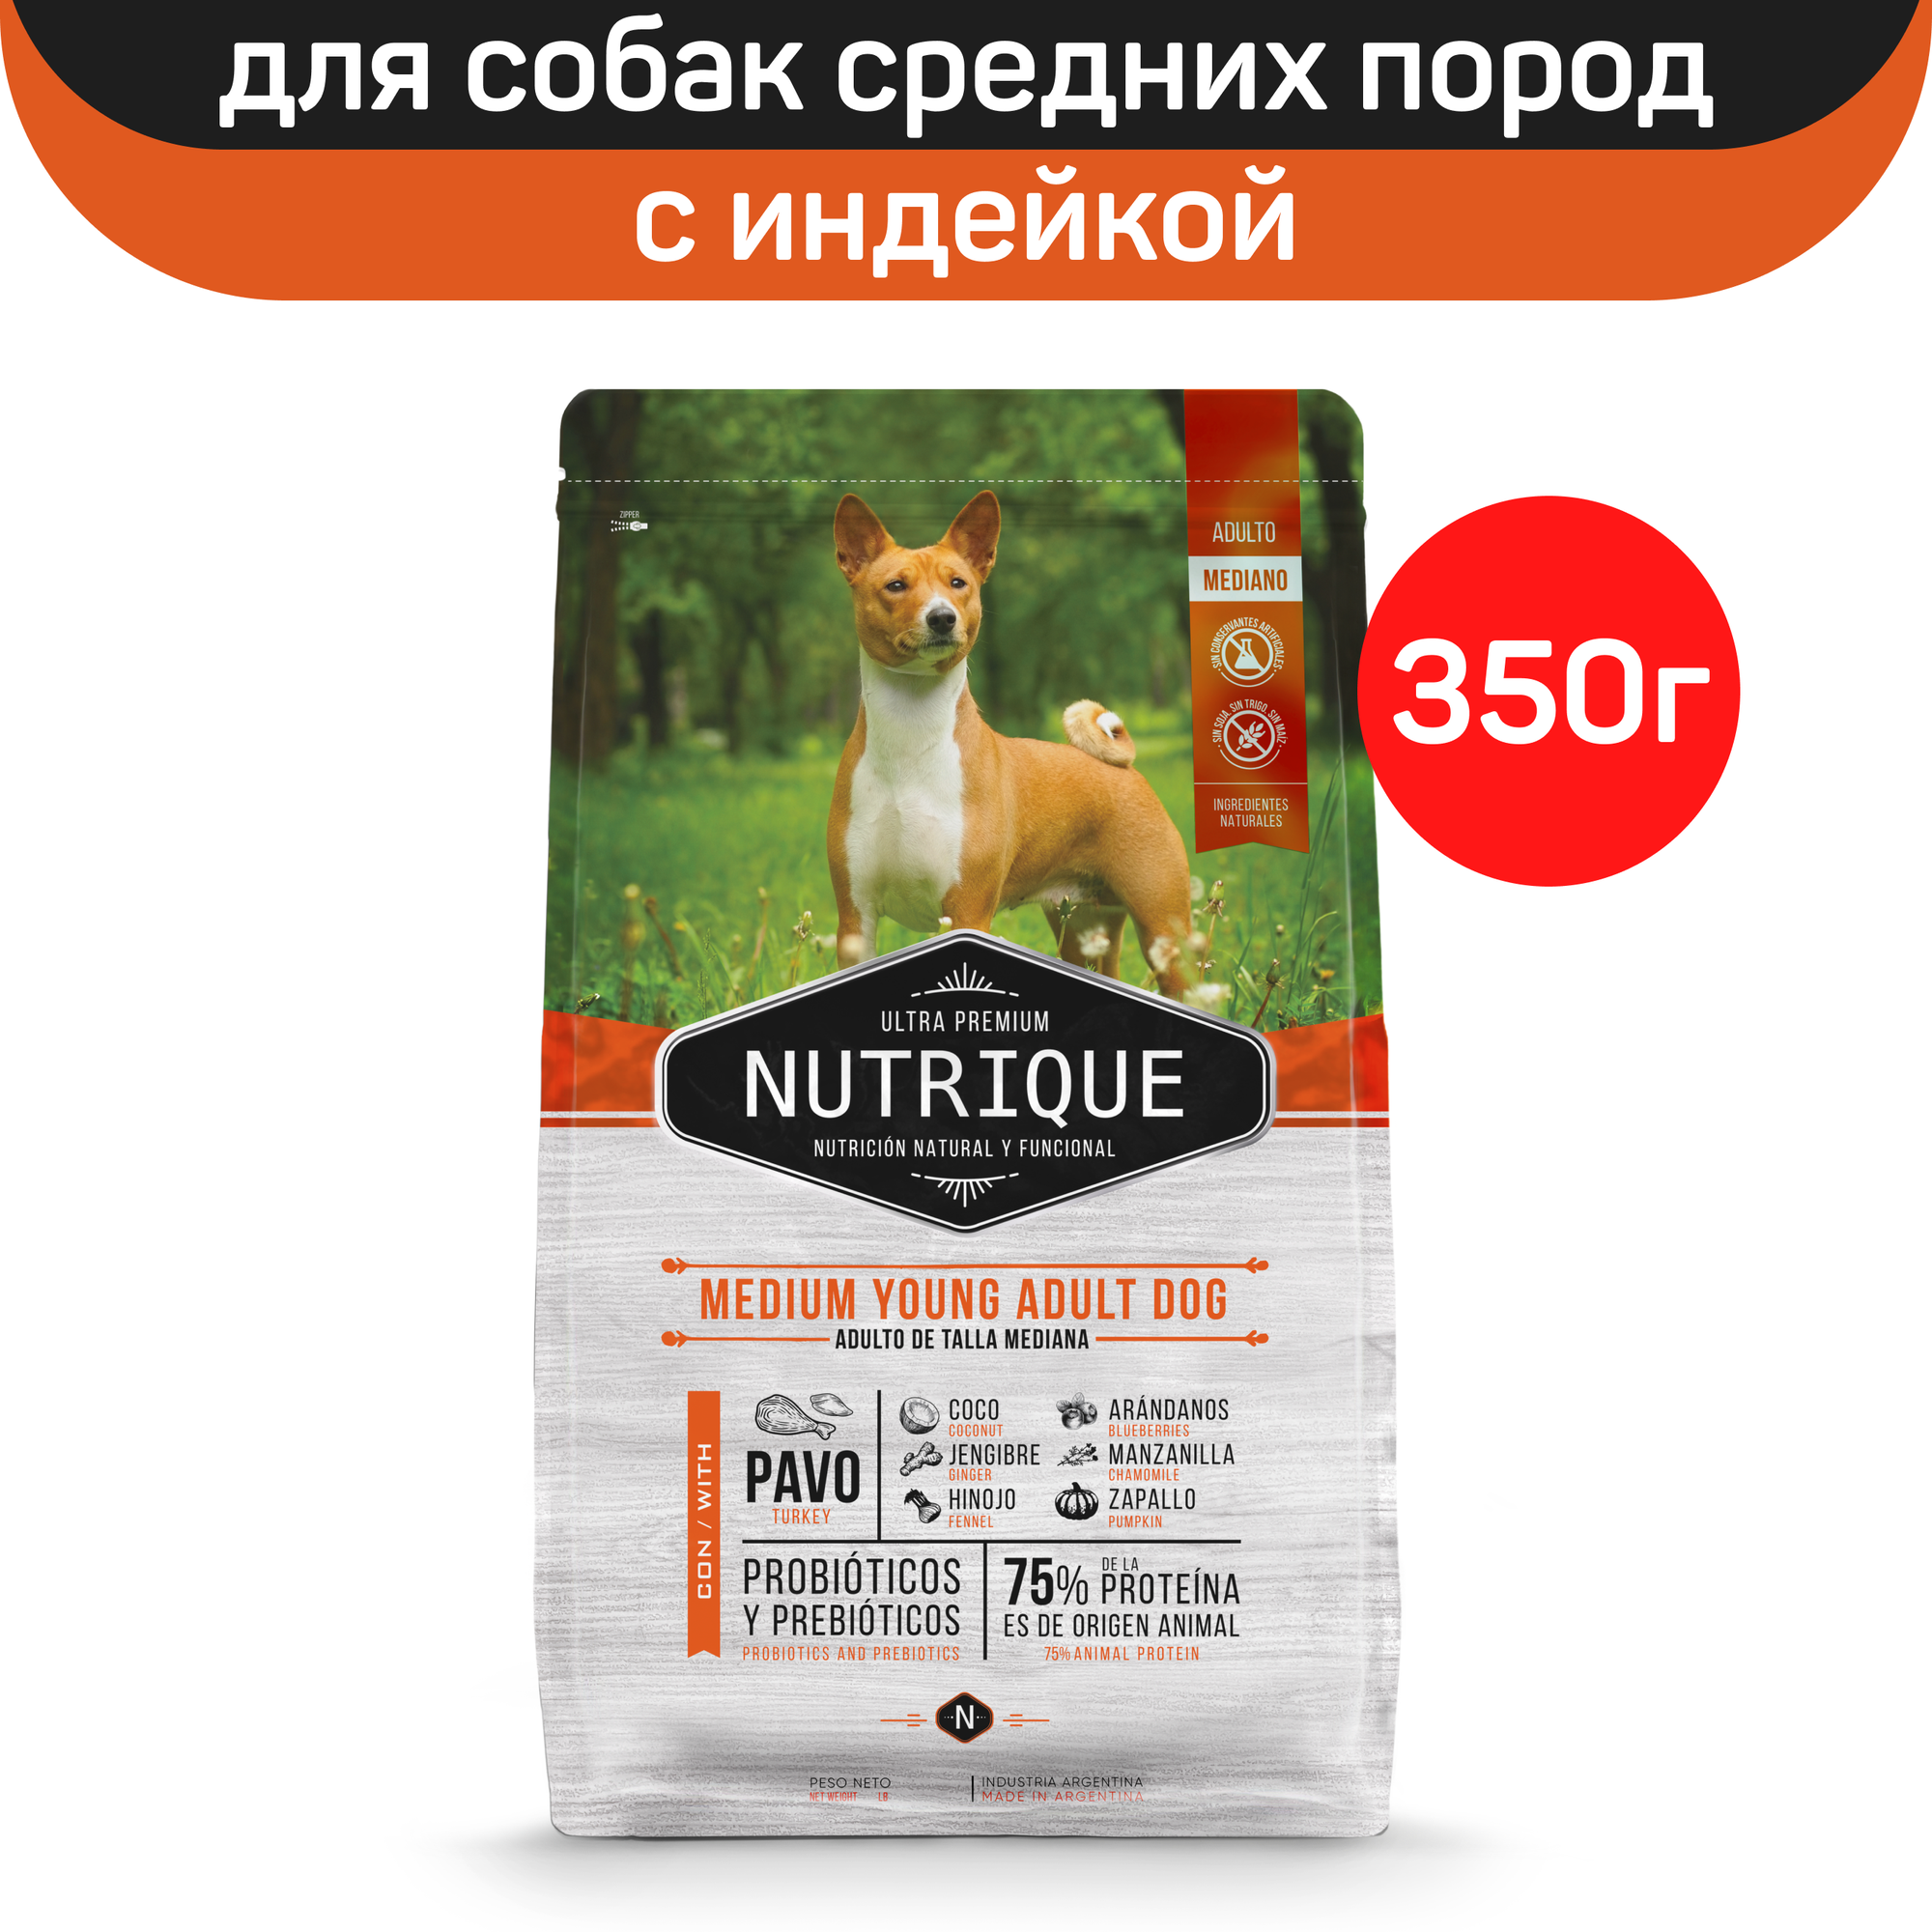 Сухой корм Vitalcan Nutrique Dog Adult для взрослых собак средних пород, с индейкой, 350 г